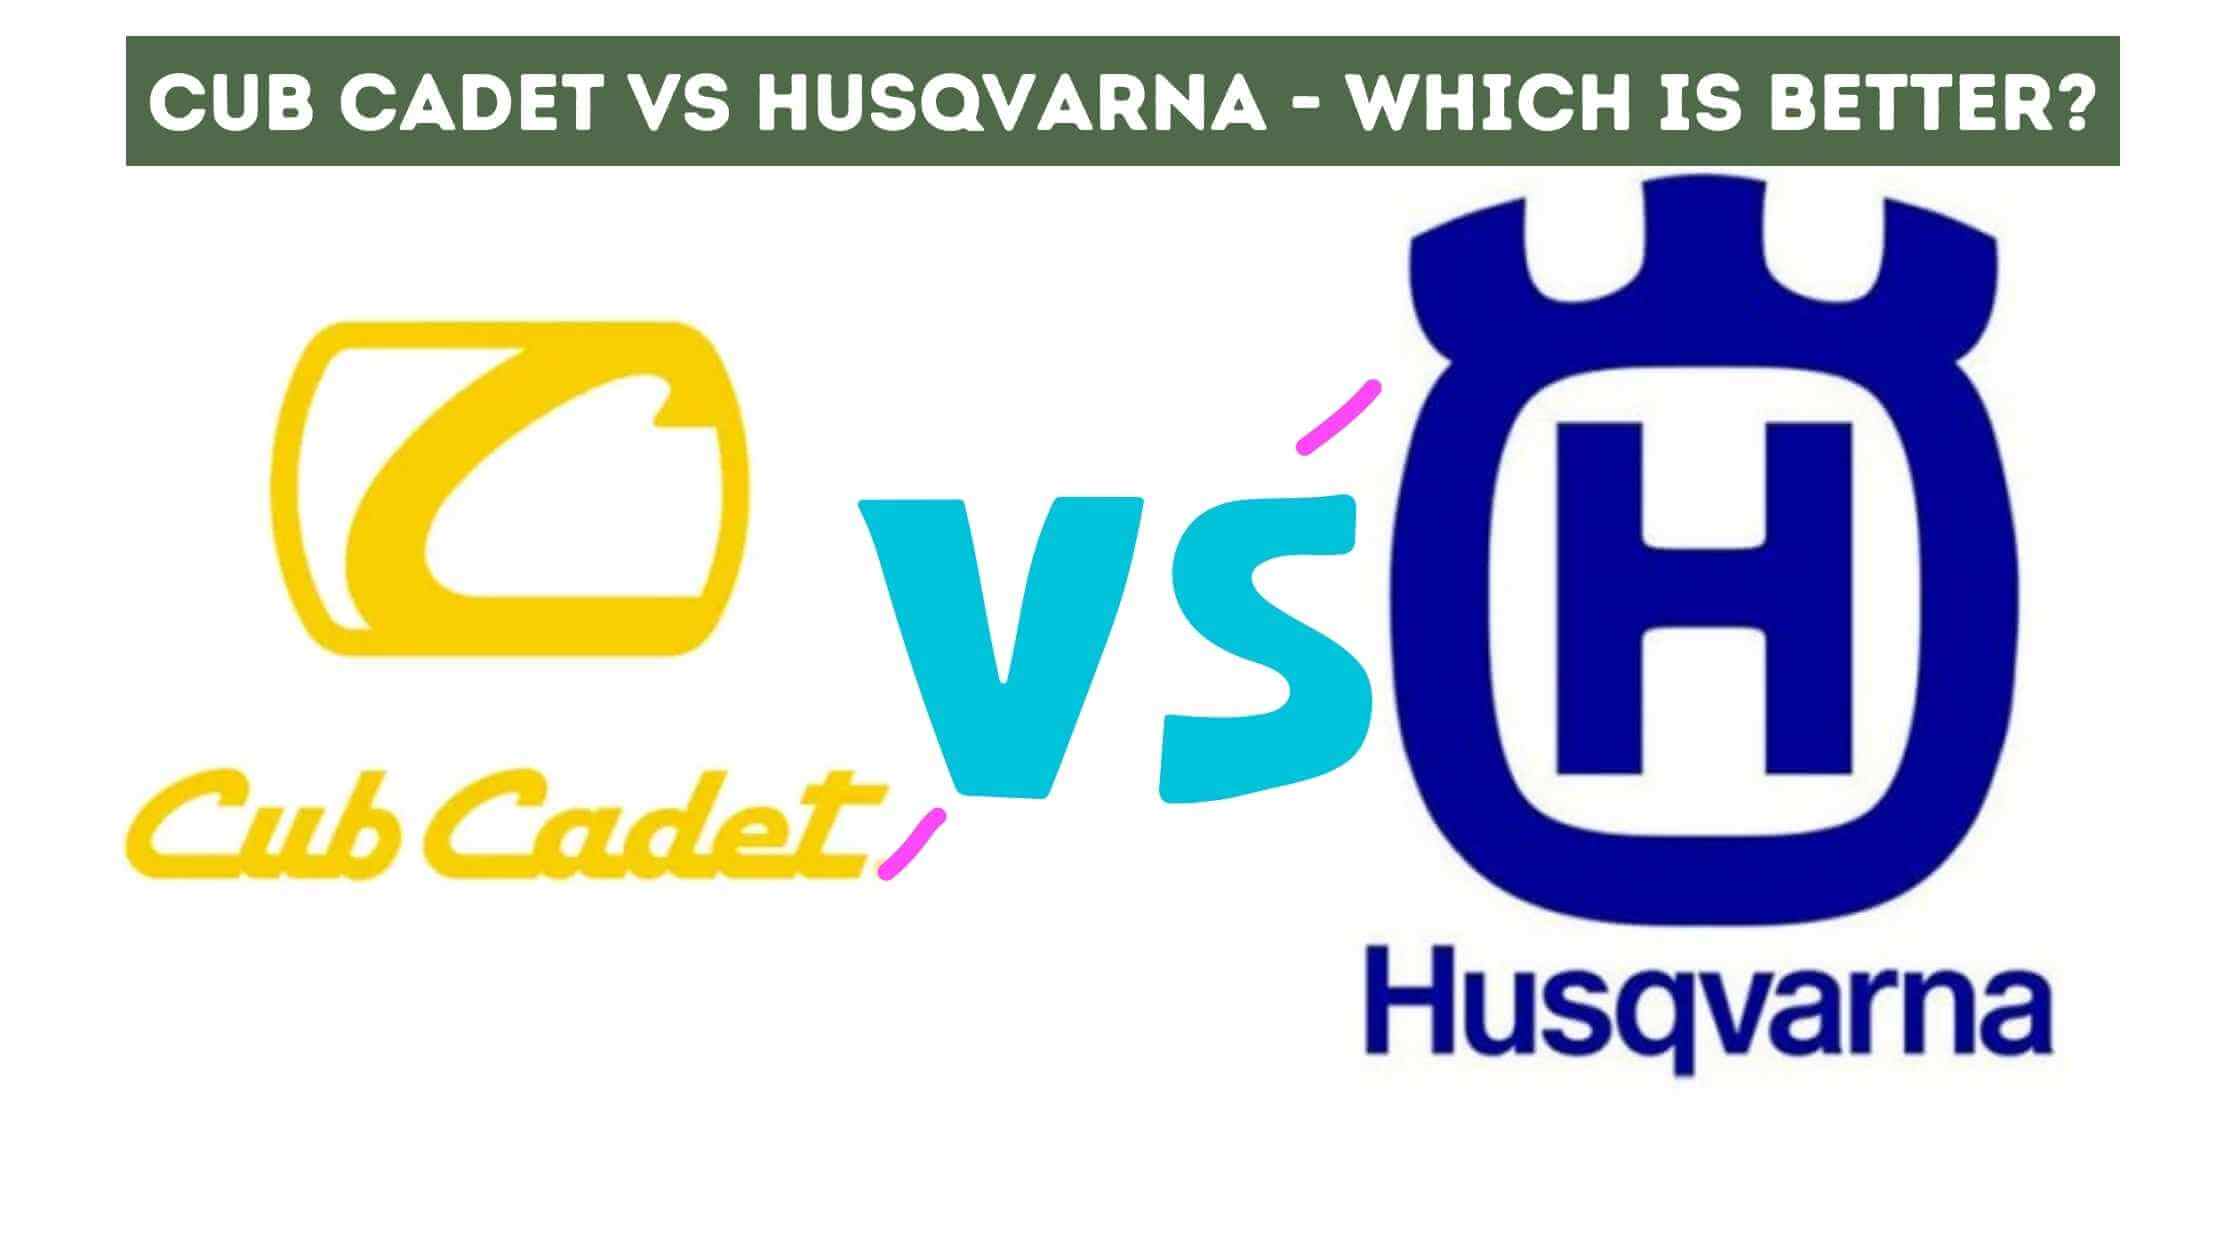 Cub Cadet vs Husqvarna